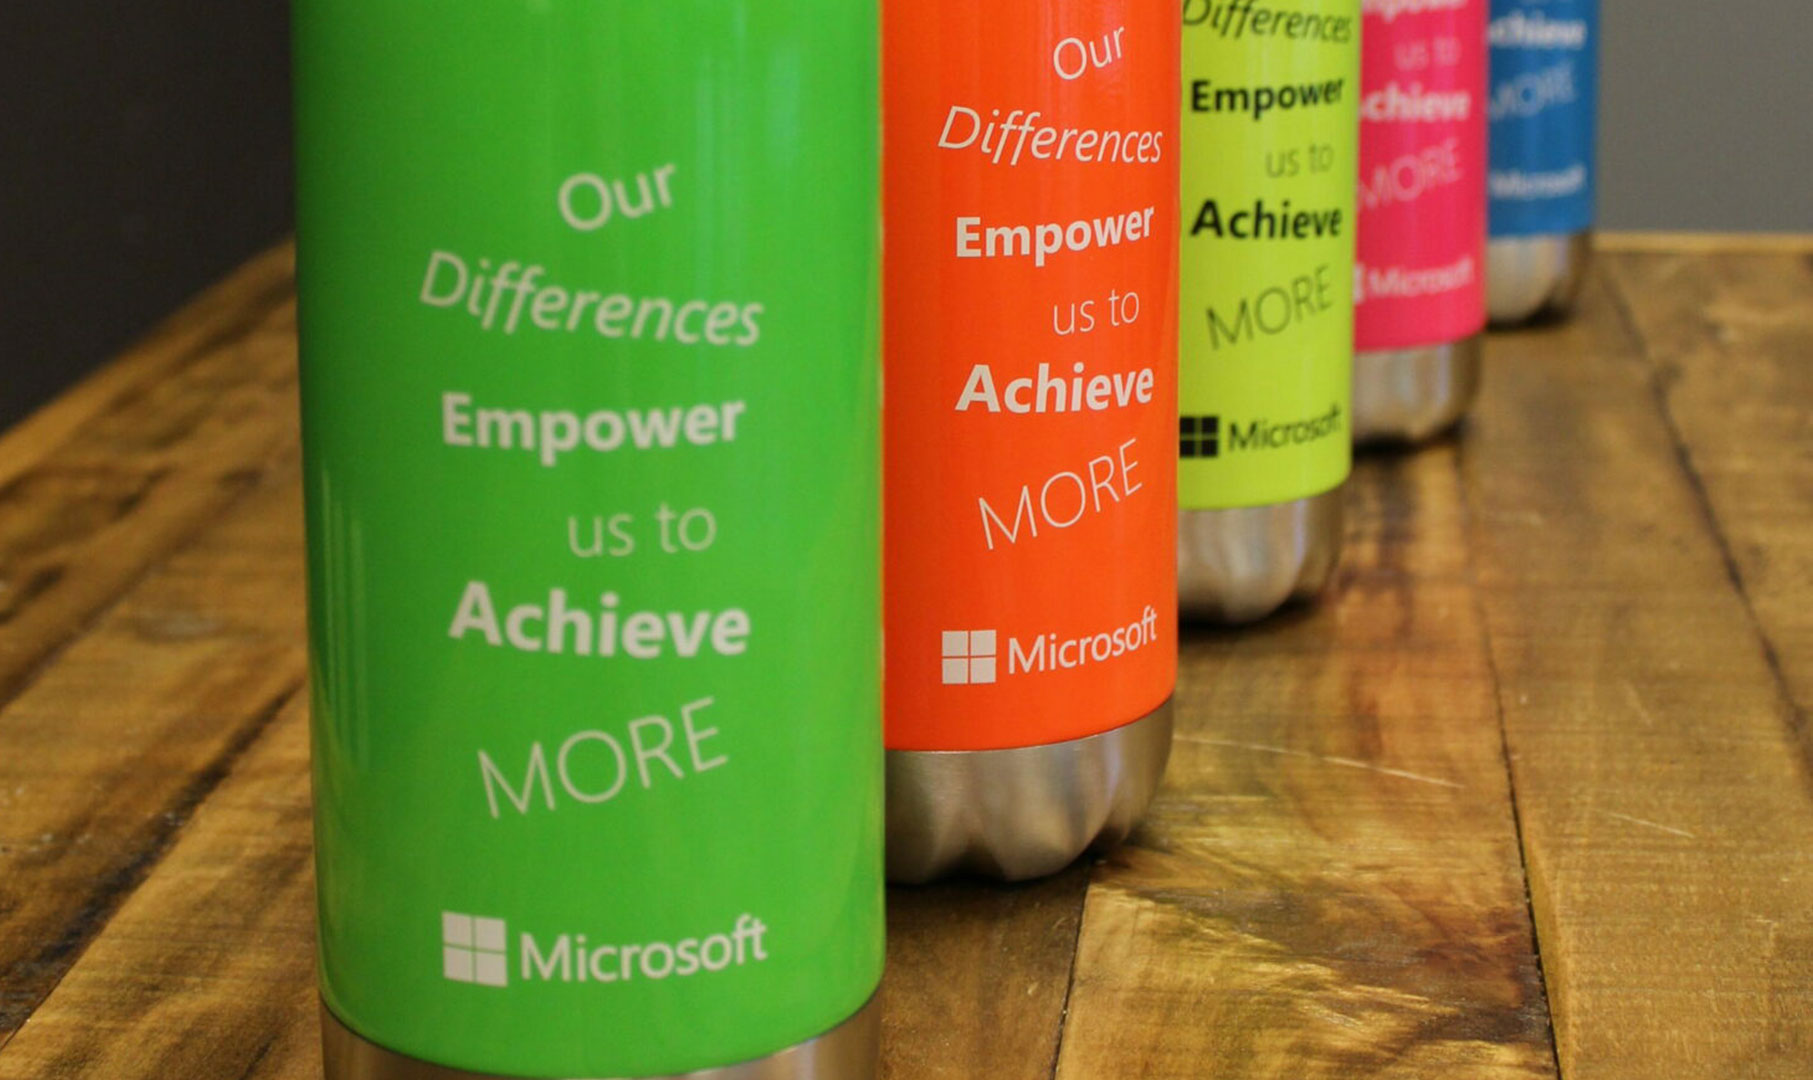 Microsoft water bottles